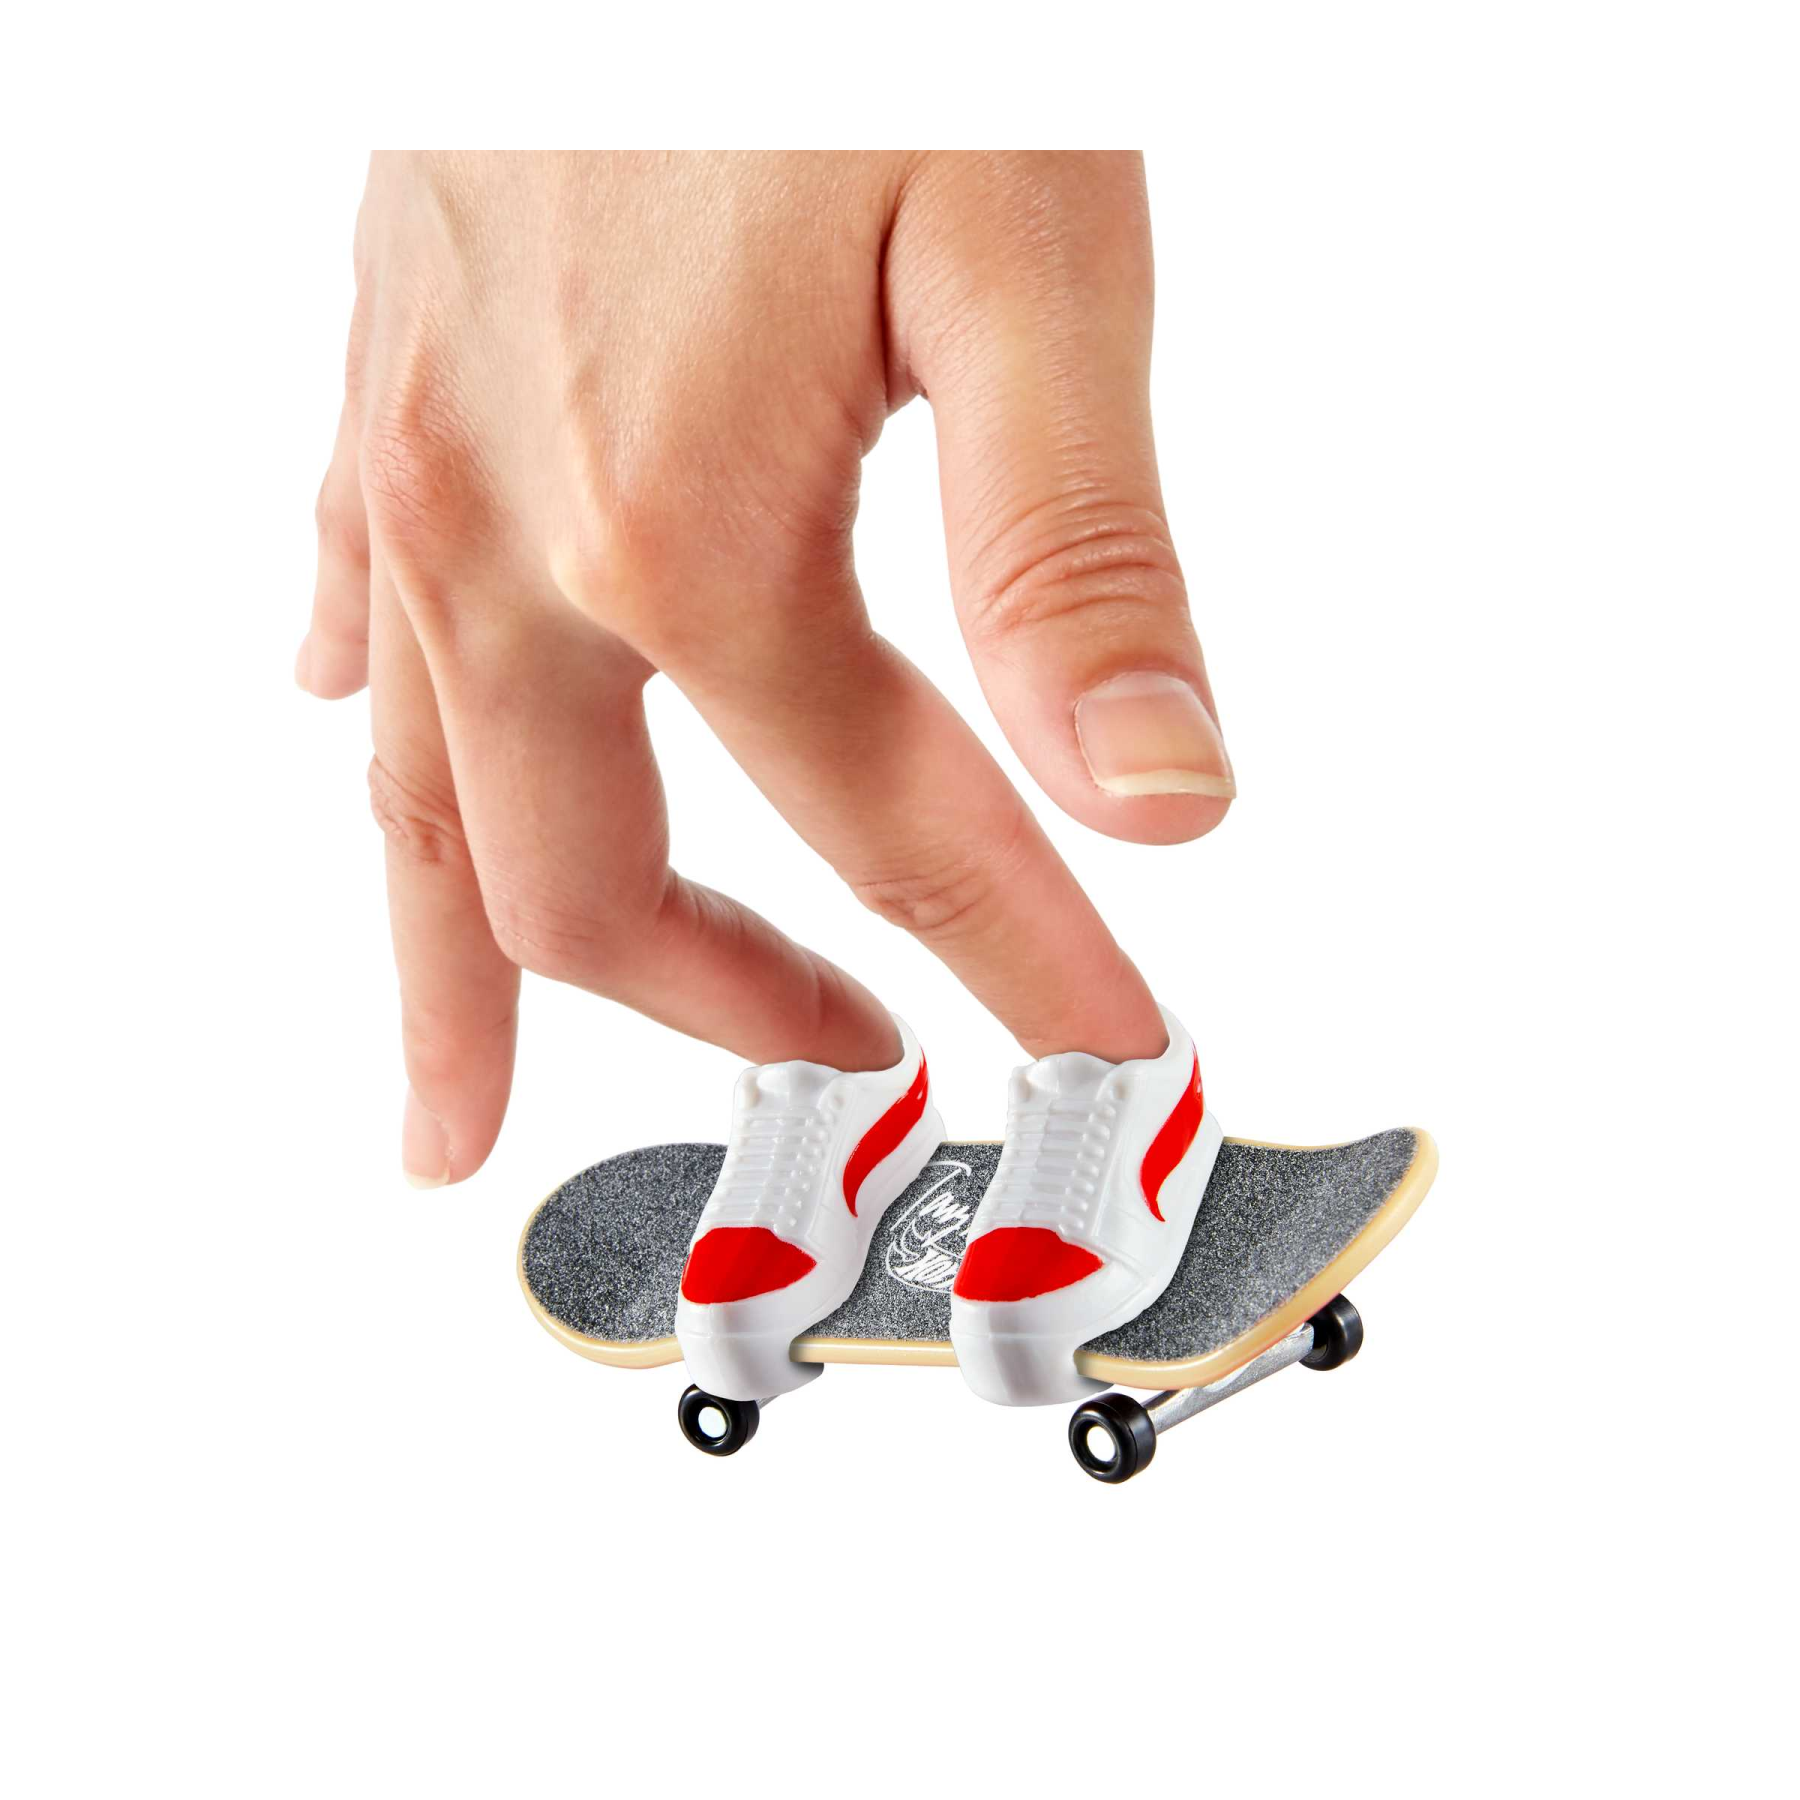 Hot wheels skate - multi-pack assortimento tony hawk, set con 4 fingerboard assemblate e 2 paia di scarpe da skate rimovibili e in stili diversi, 5+ anni, hgt84 - Hot Wheels